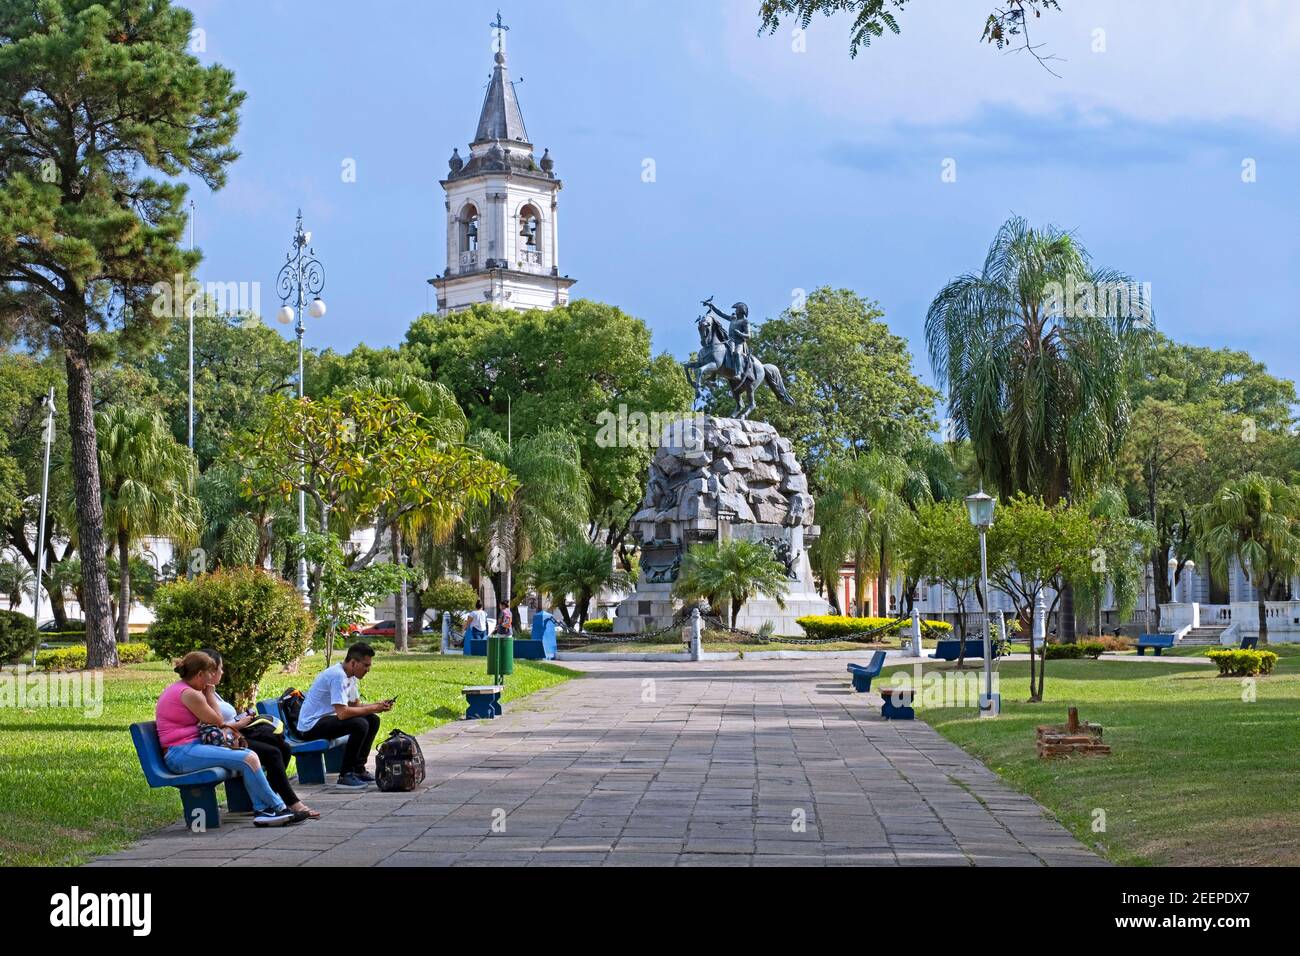 Statua equestre del generale San Martín e Iglesia de la Merced chiesa presso la Plaza 25 de Mayo, piazza principale della città Corrientes, Argentina Foto Stock